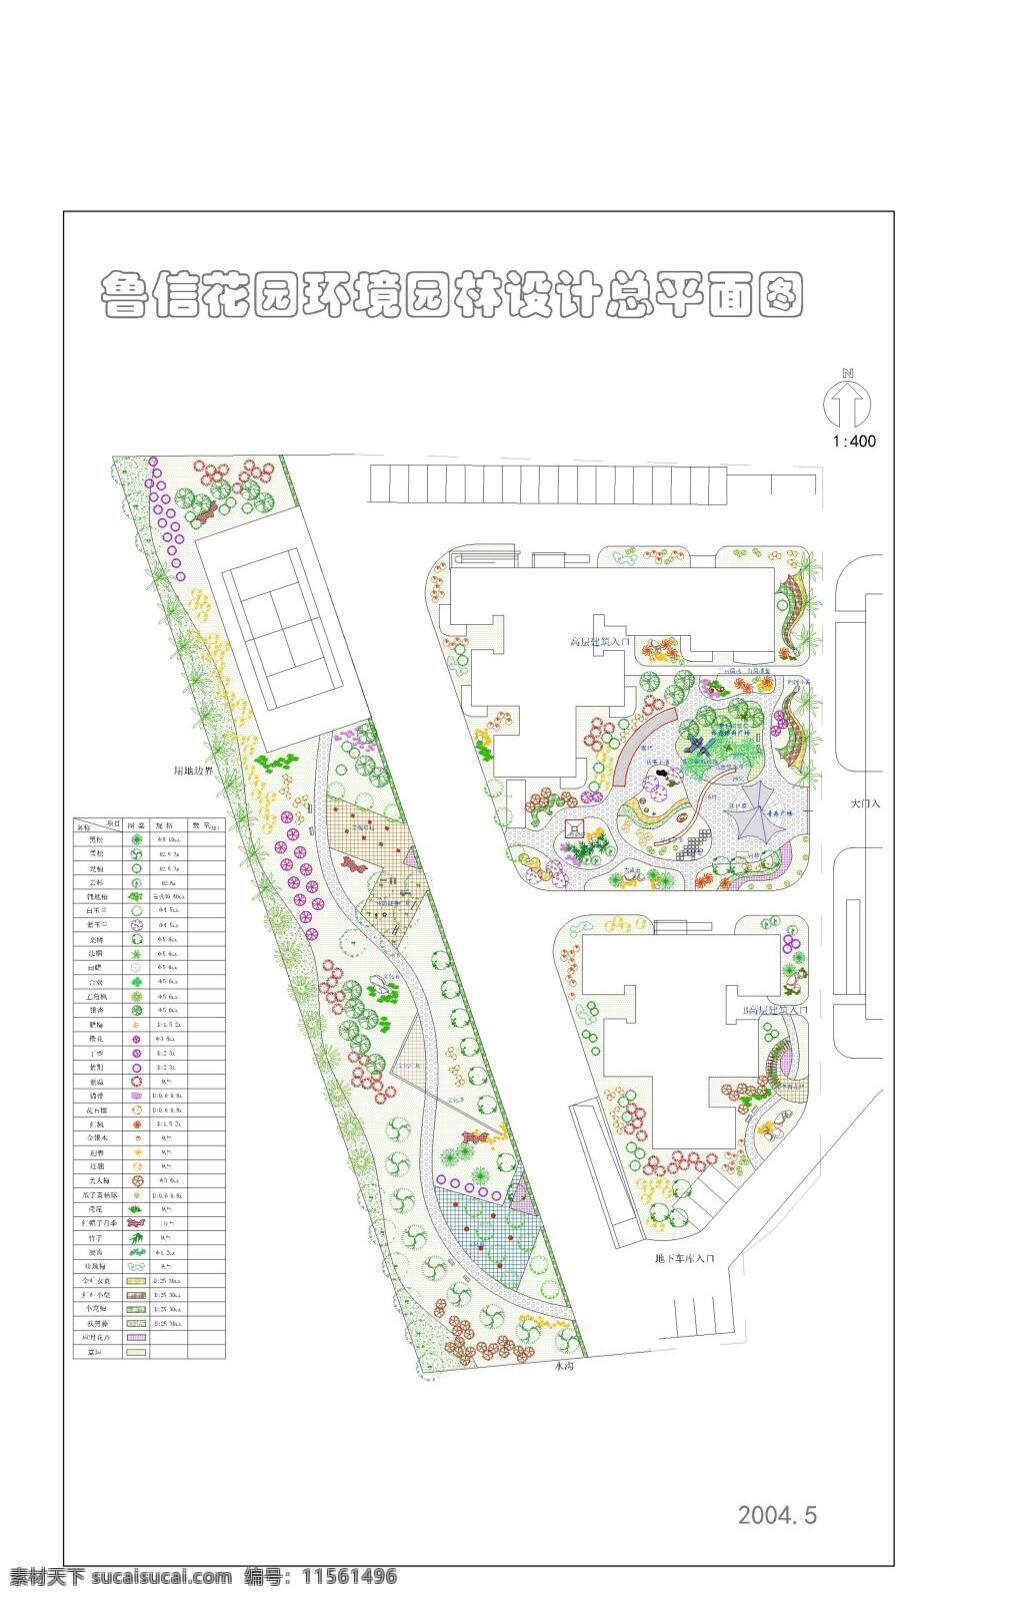 鲁 信 花园 小区 绿化 小区景观 庭院设计 绿化设计 植物配置 施工图 dwg 白色